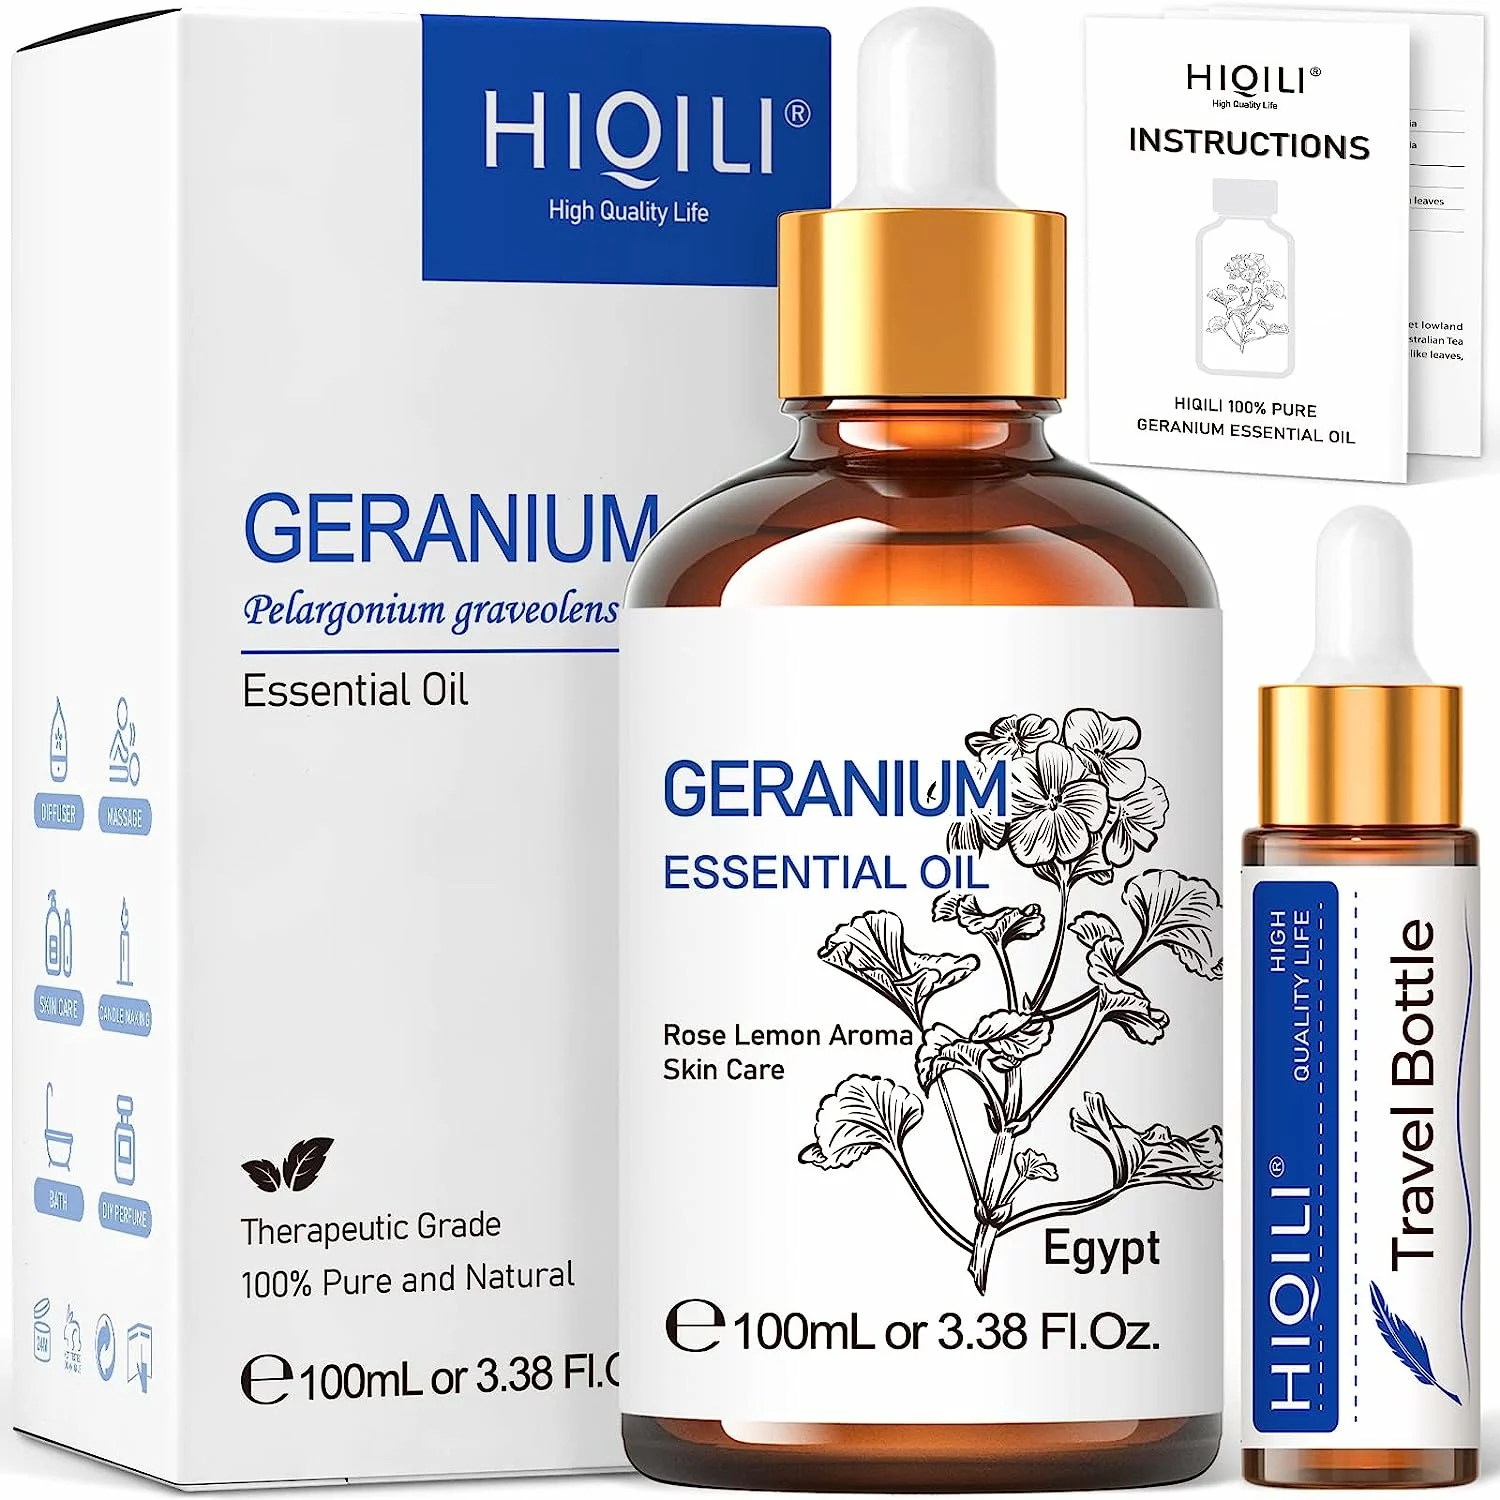 Hiqili Geranium Essential Oil